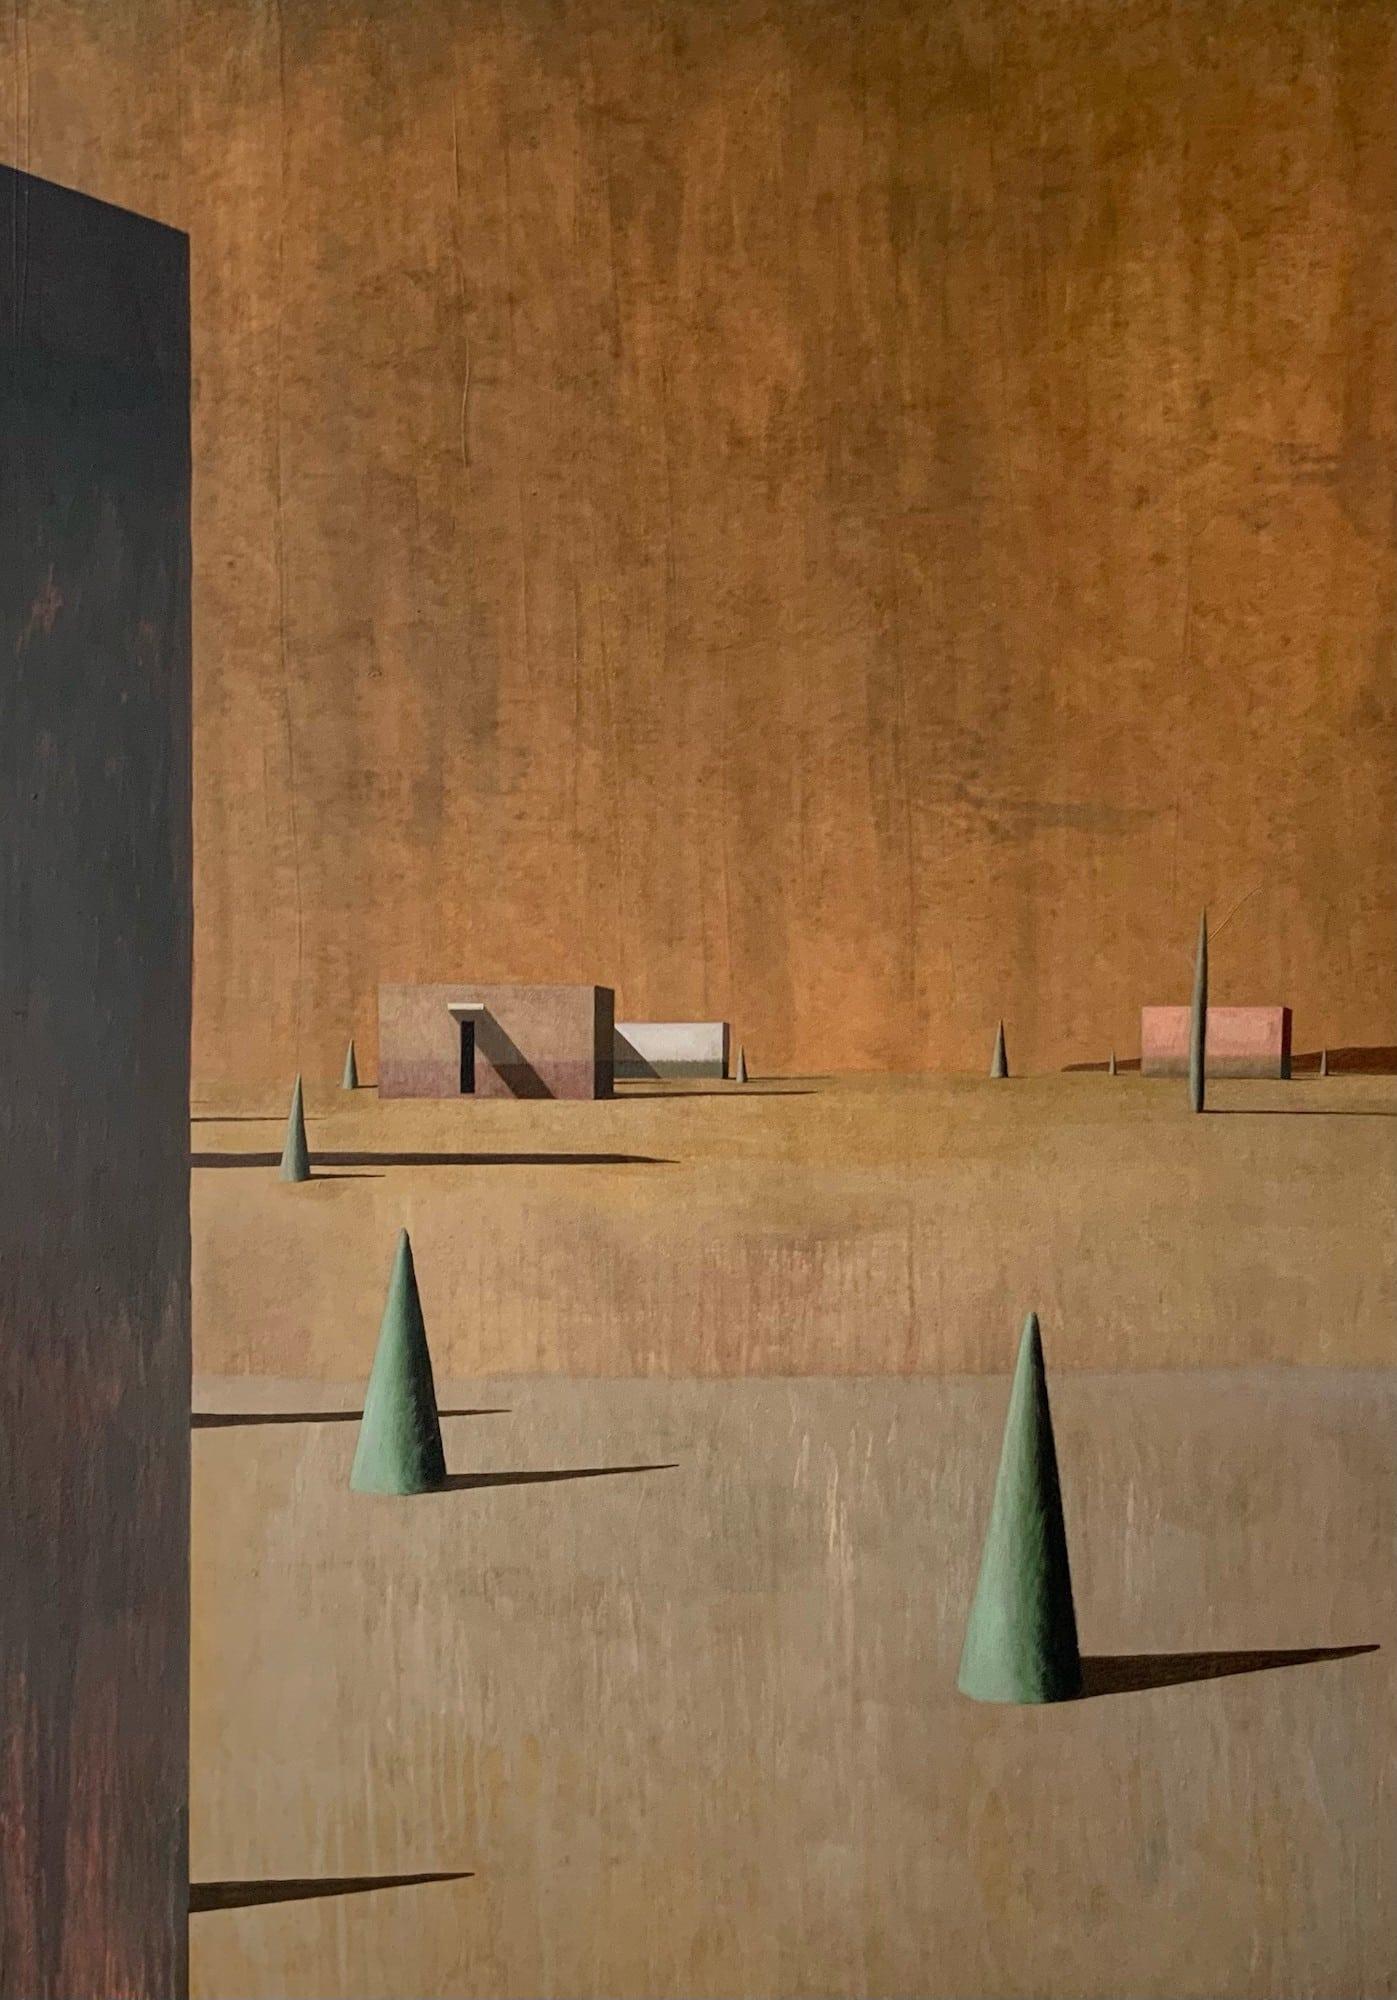 SIENA de l'artiste contemporain espagnol Ramon Enrich. Acrylique sur toile, H 111 × L 155 cm.
Cette œuvre unique est signée, vendue non encadrée et accompagnée d'un certificat d'authenticité.
Dans ces peintures, l'artiste établit une conversation